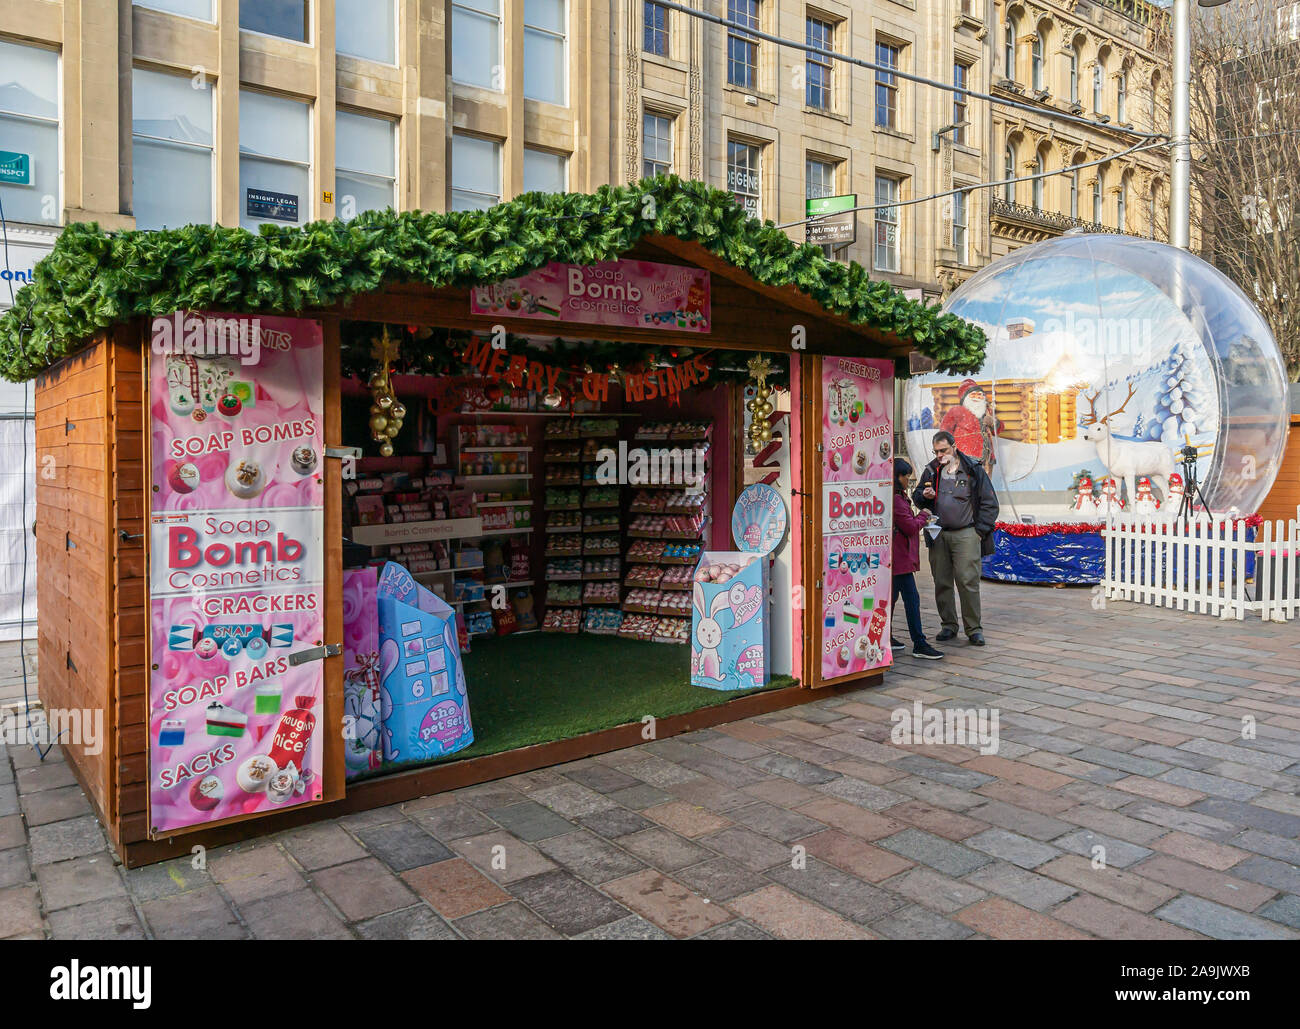 Glasgow Mercatino di Natale 2019 in St Enoch Square Glasgow Scozia con stallo bomba di sapone cosmetici Foto Stock